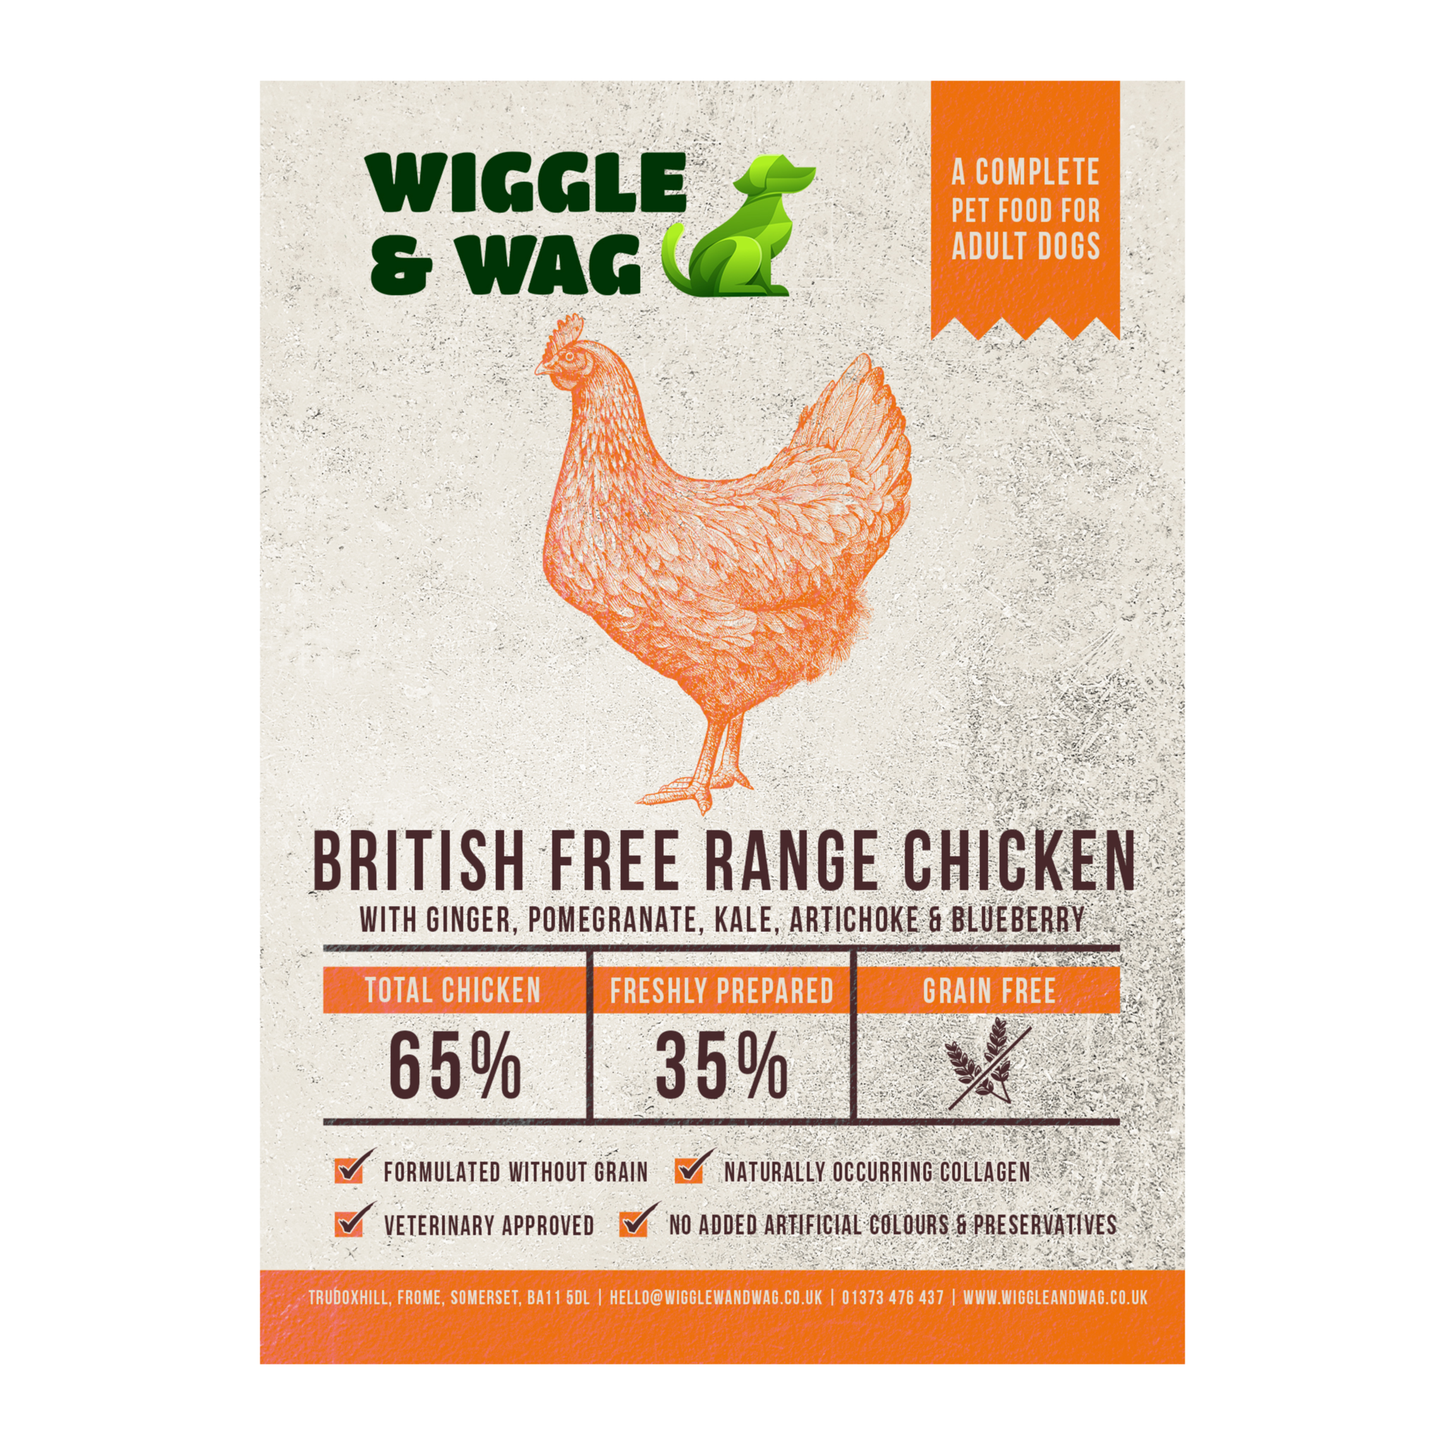 British Free Range Chicken - Complete adult dog food